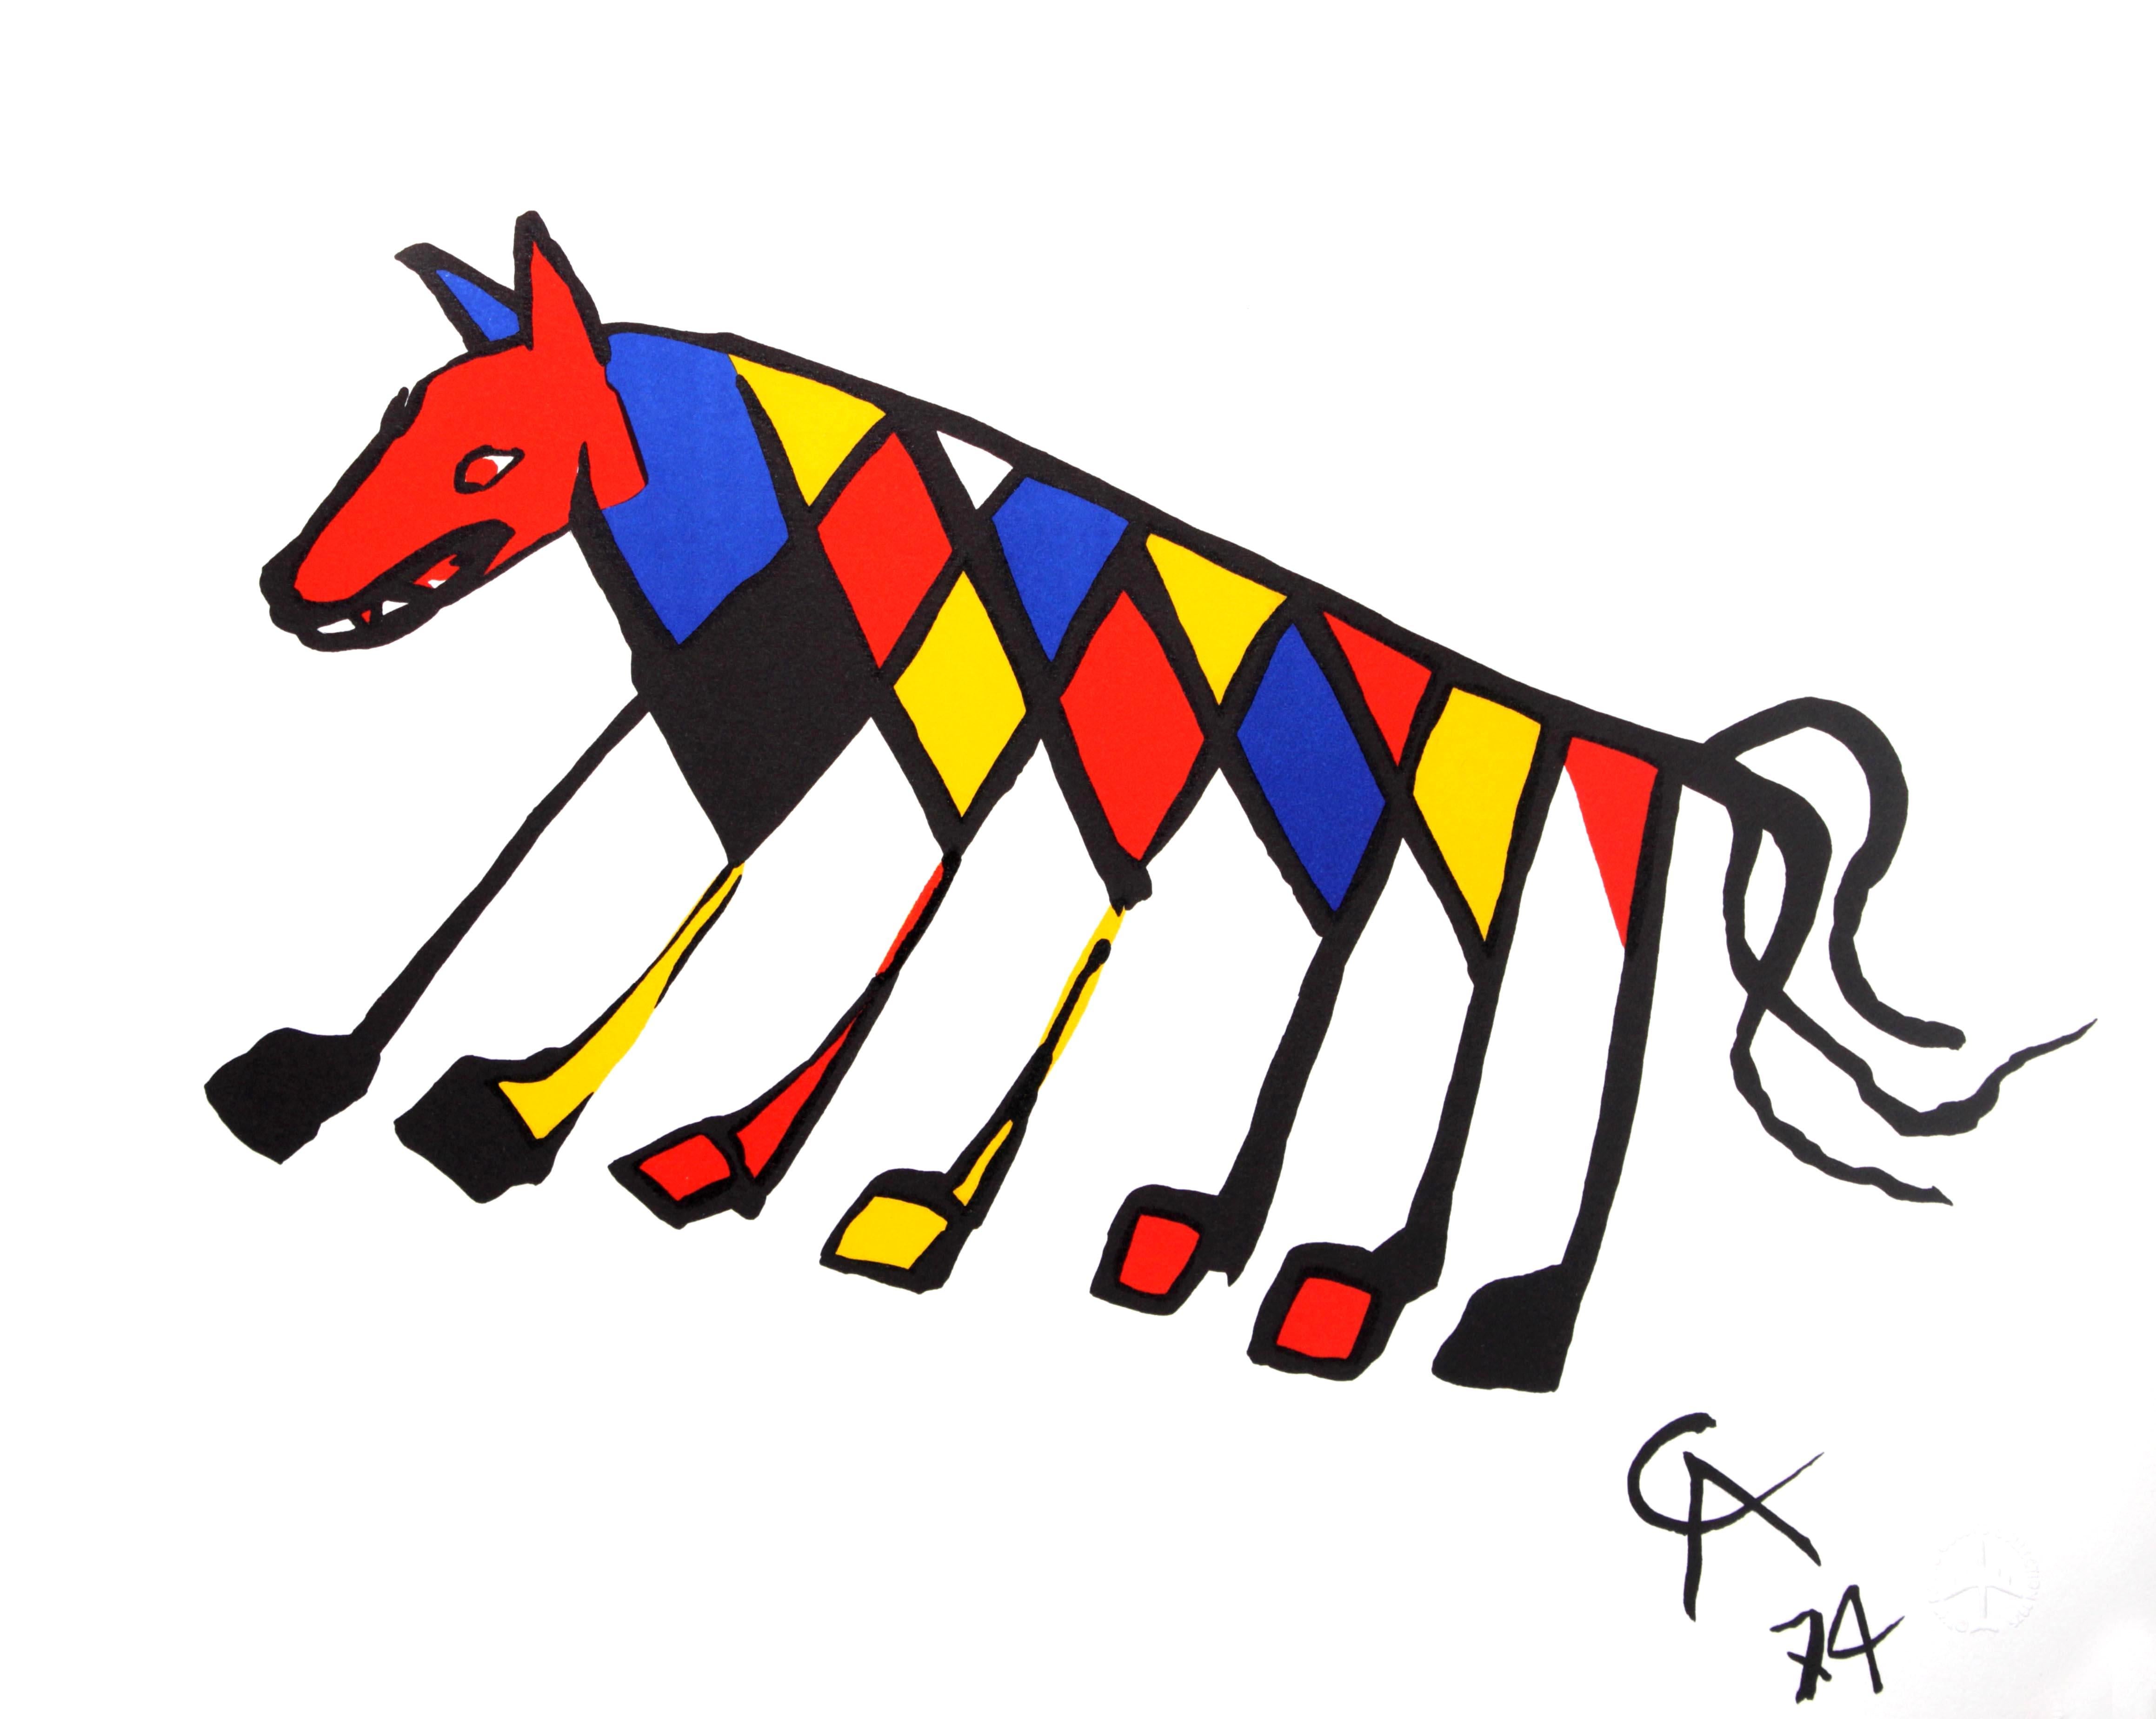 Künstler: Alexander Calder
Titel: Beastie
Jahr: 1974
Abmessungen: 20in. durch 26in.
Auflage: Aus der seltenen limitierten Auflage
Suite: The Flying Colors Collection'S
Medium: Original-Lithografie auf Arches-Waffelpapier
Zustand: Neuwertig
Details